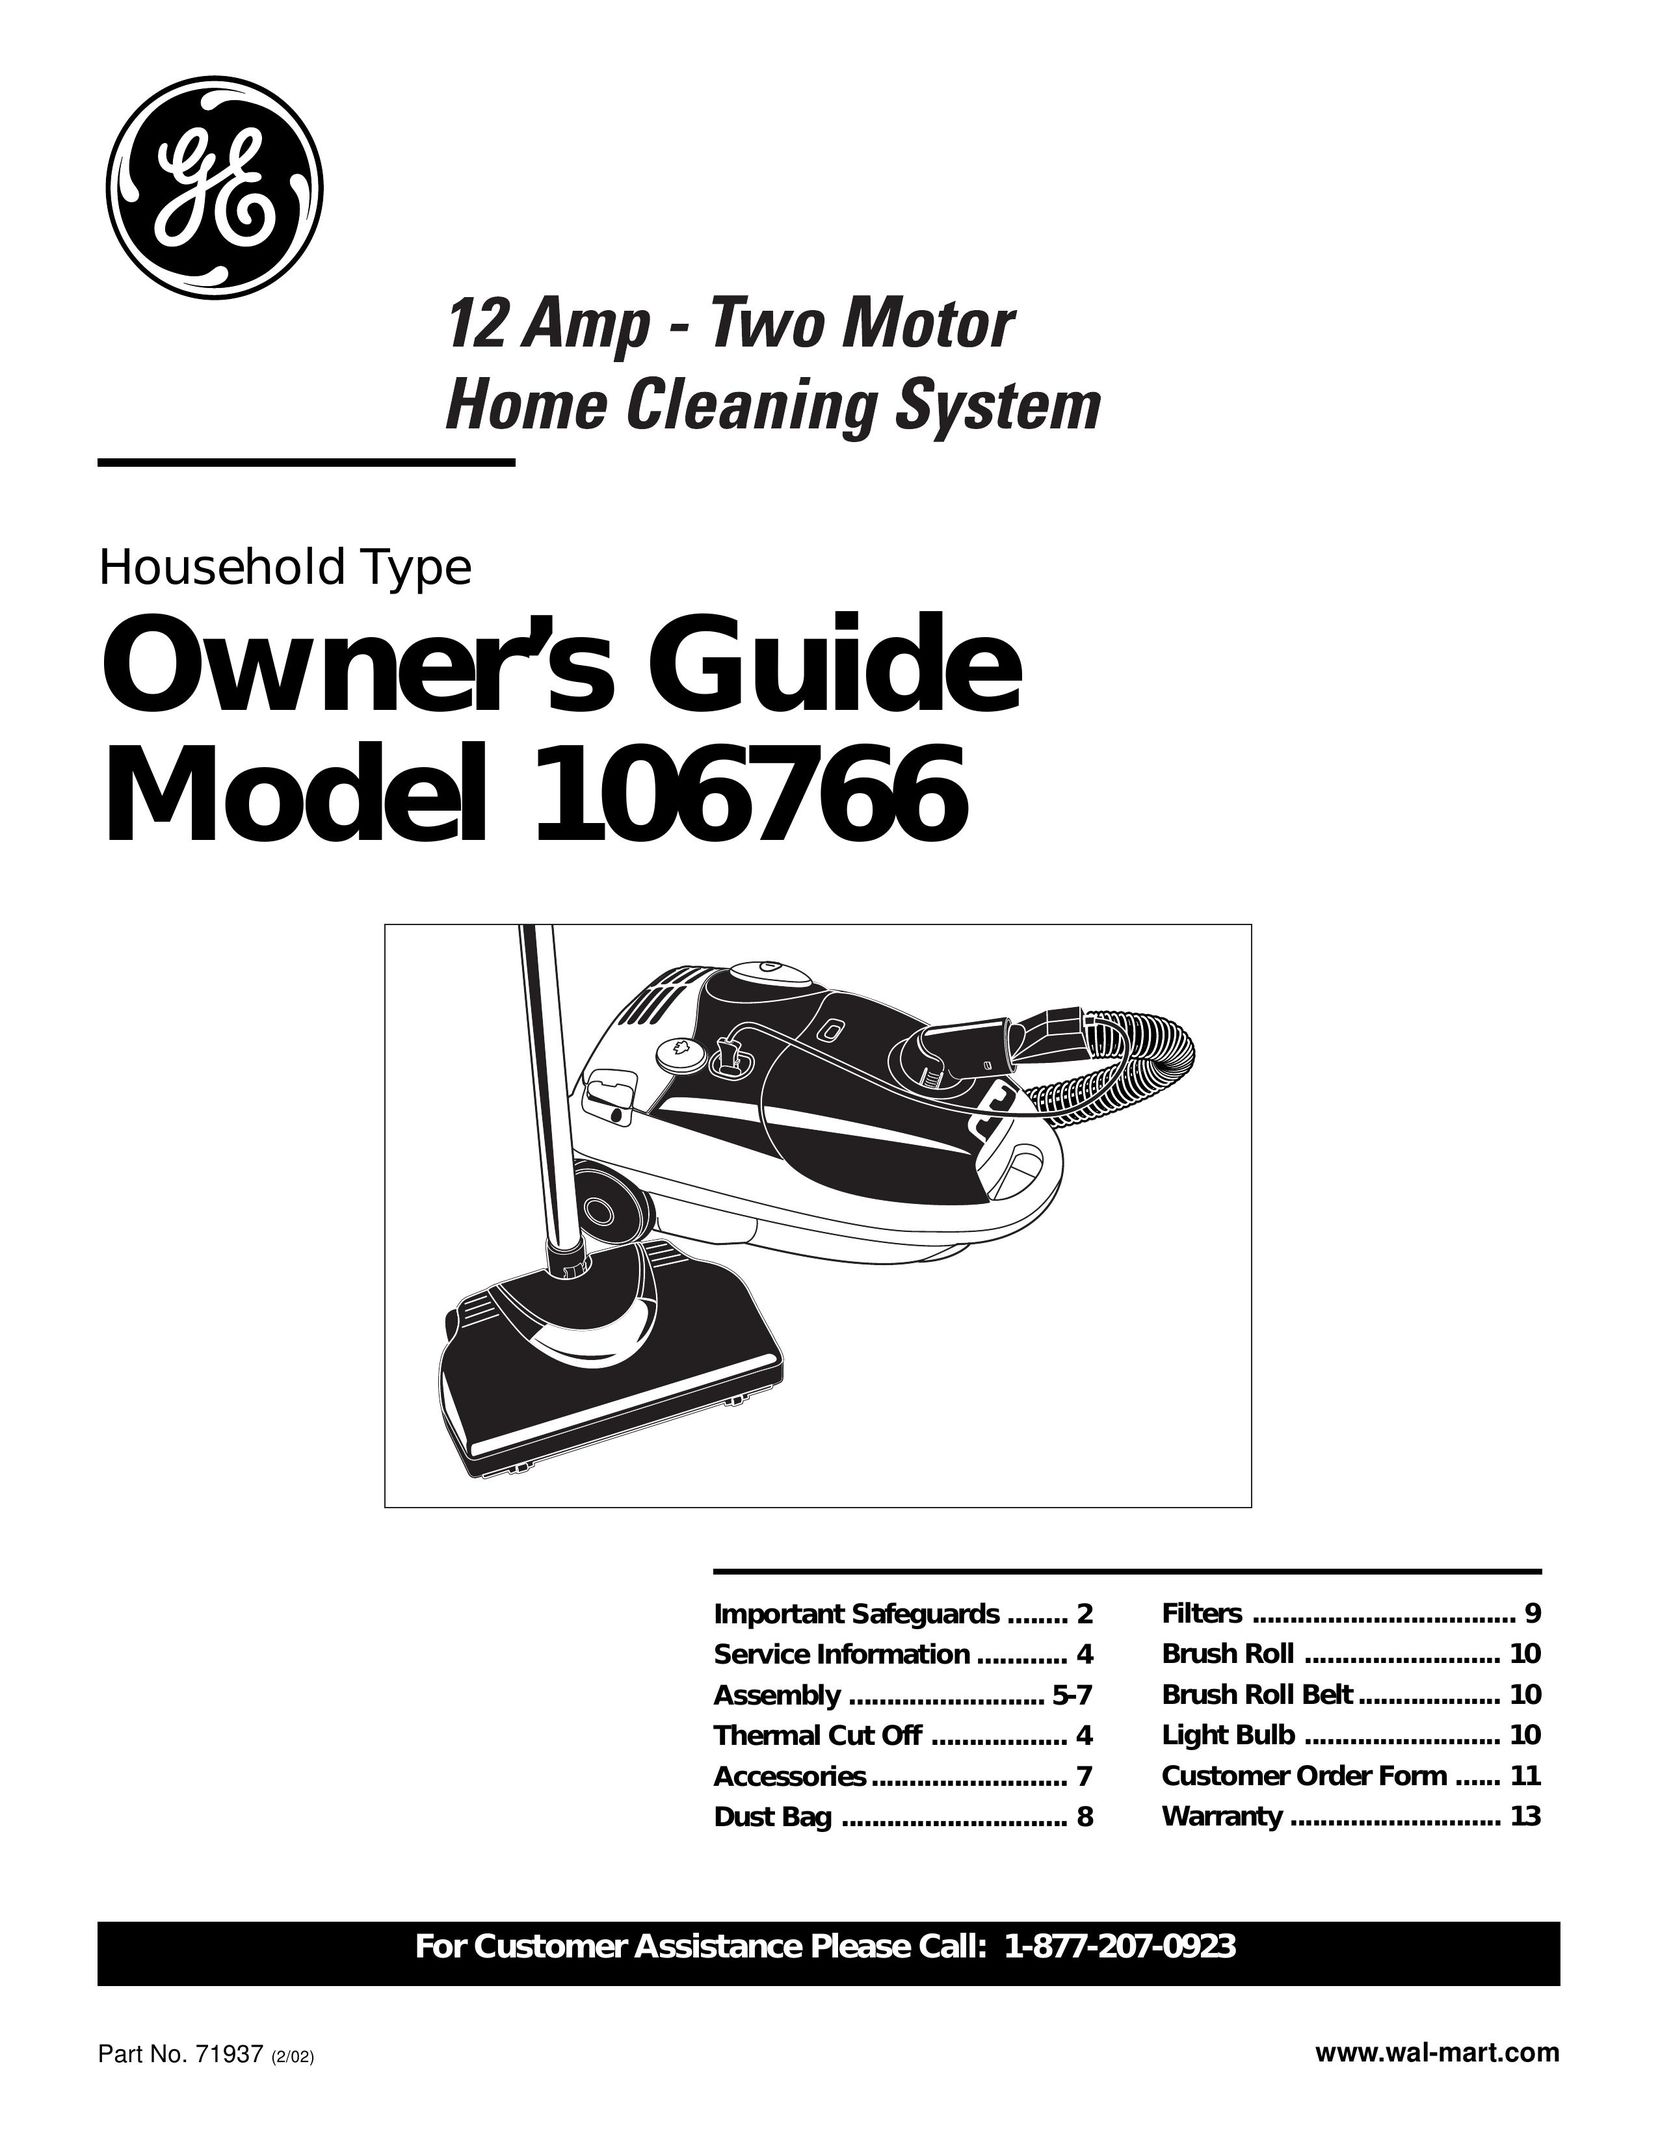 GE 106766 Vacuum Cleaner User Manual